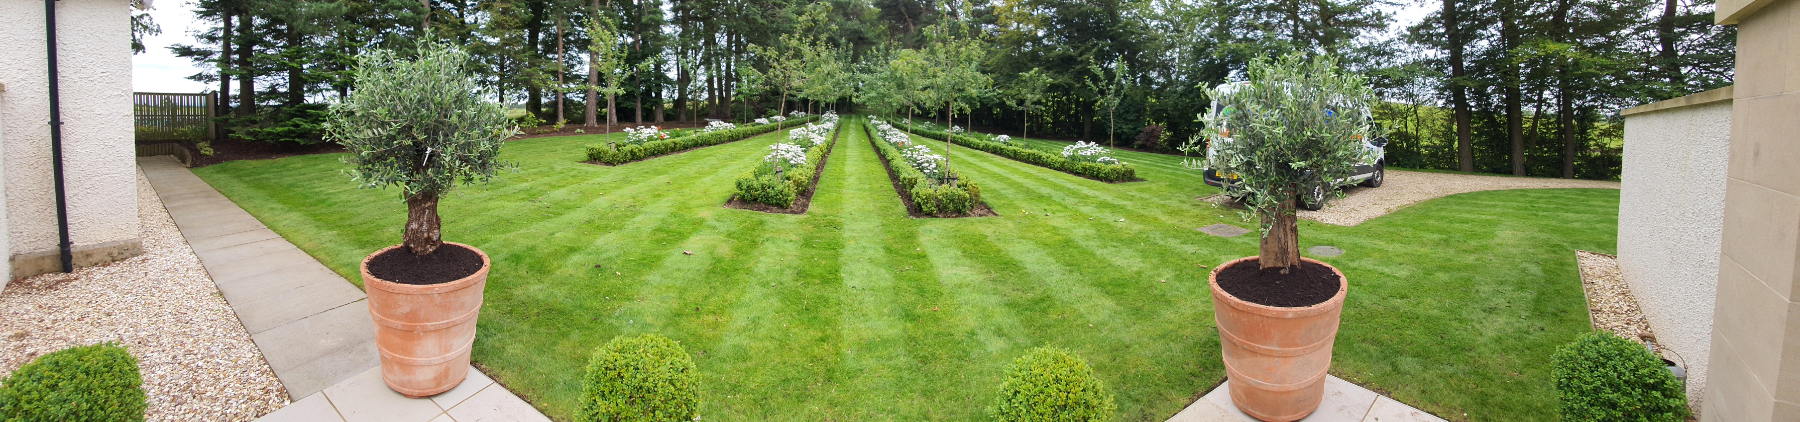 a green garden with flower beds